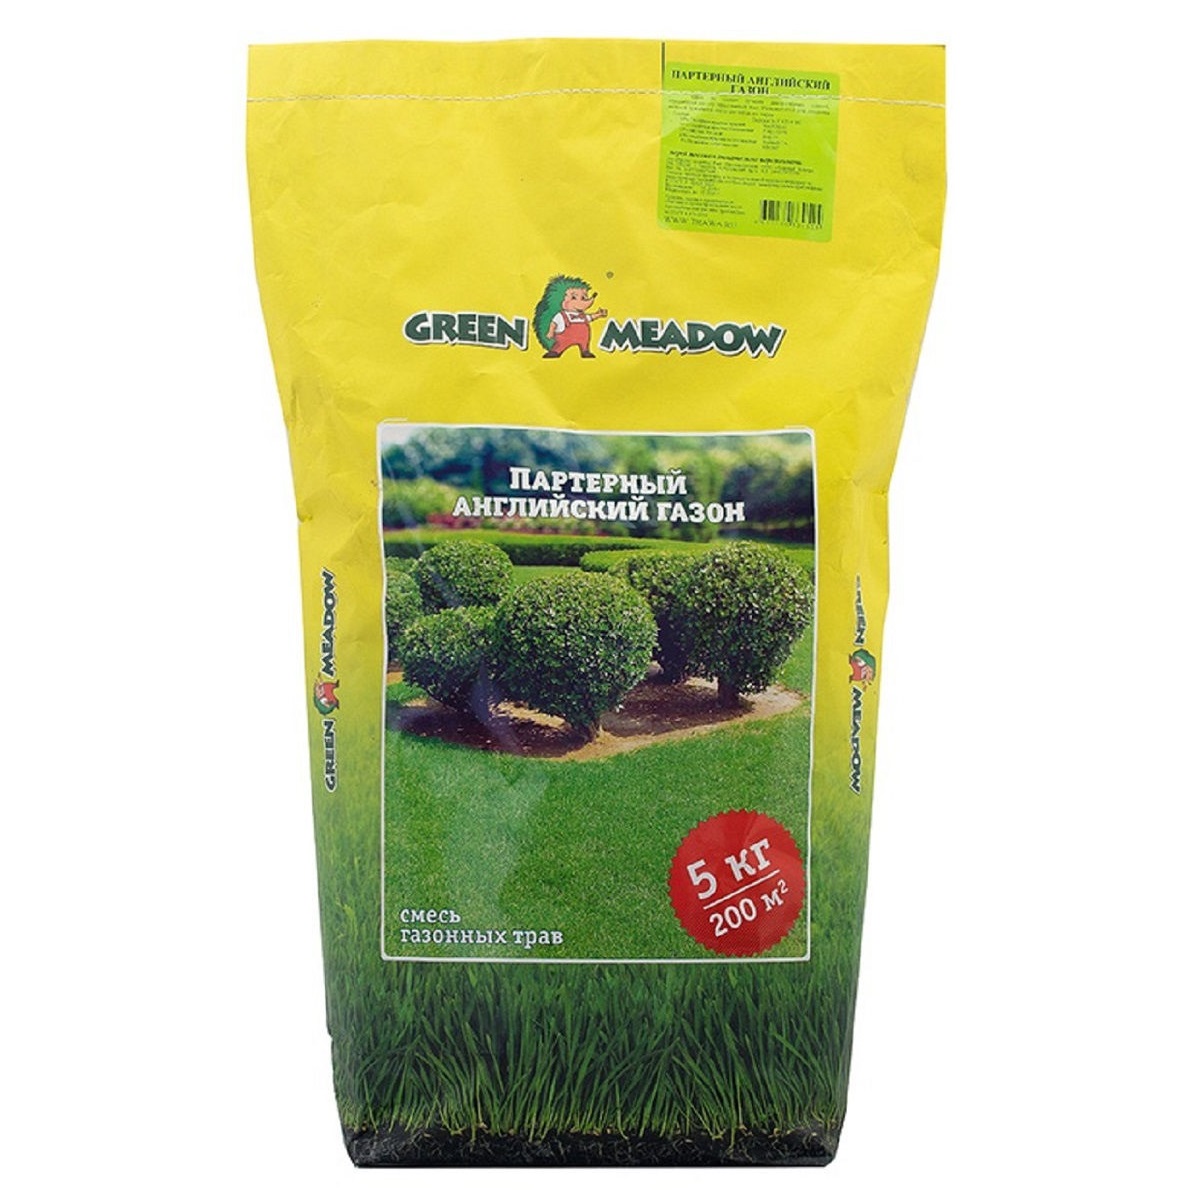 Газон Green Meadow партерный английский 5 кг смесь семян green meadow партерный английский газон 5 кг 5 кг